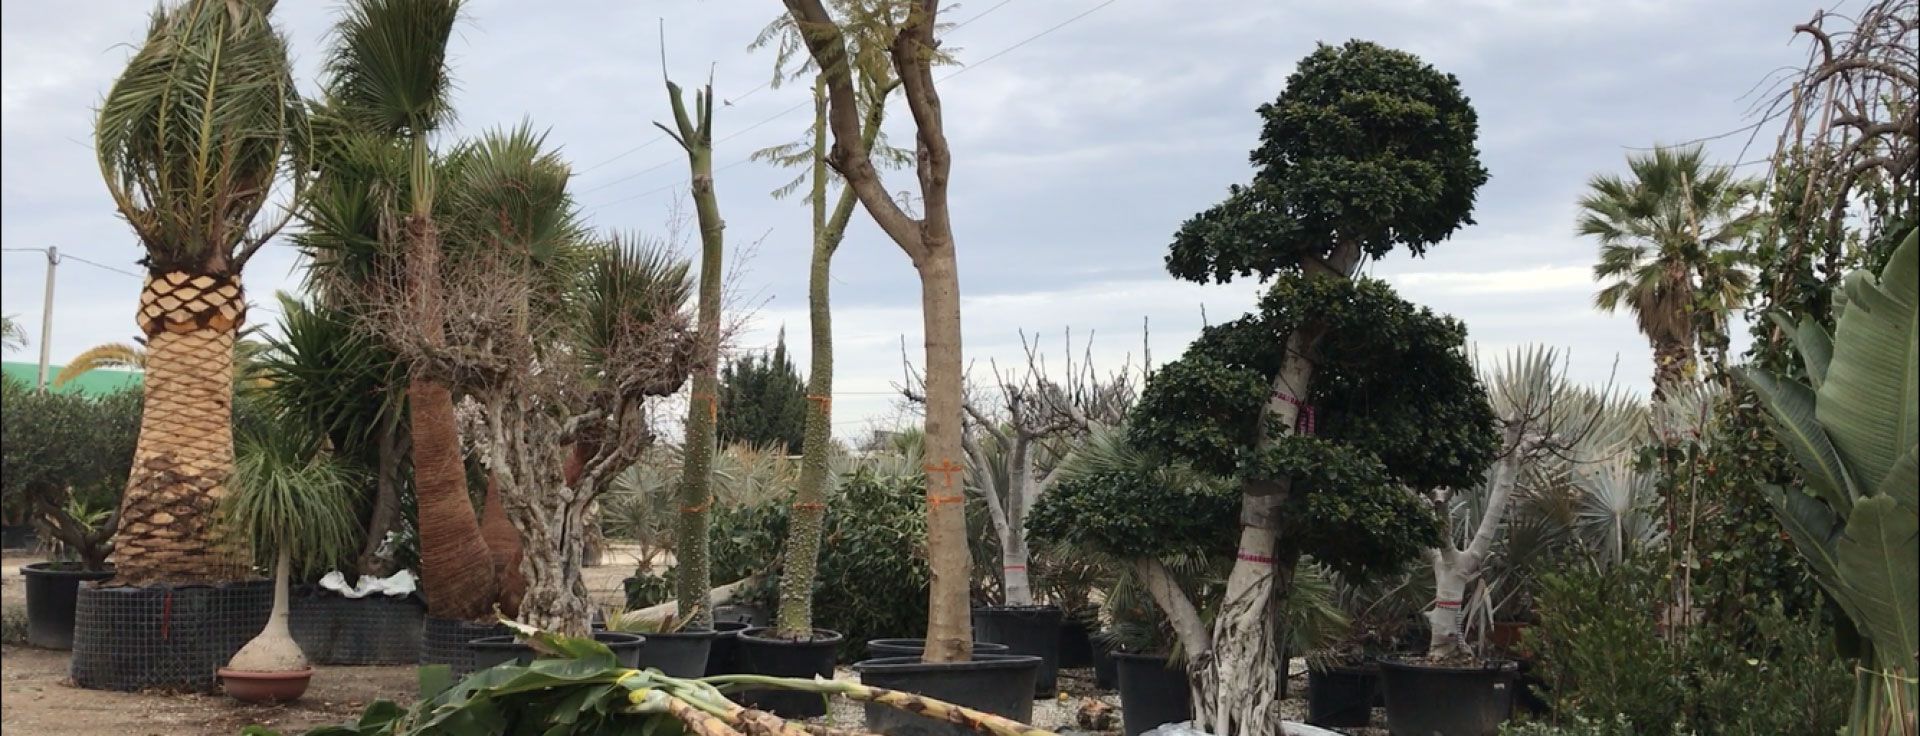 Plantas mediterráneas en venta al por mayor en Alicante y Elche